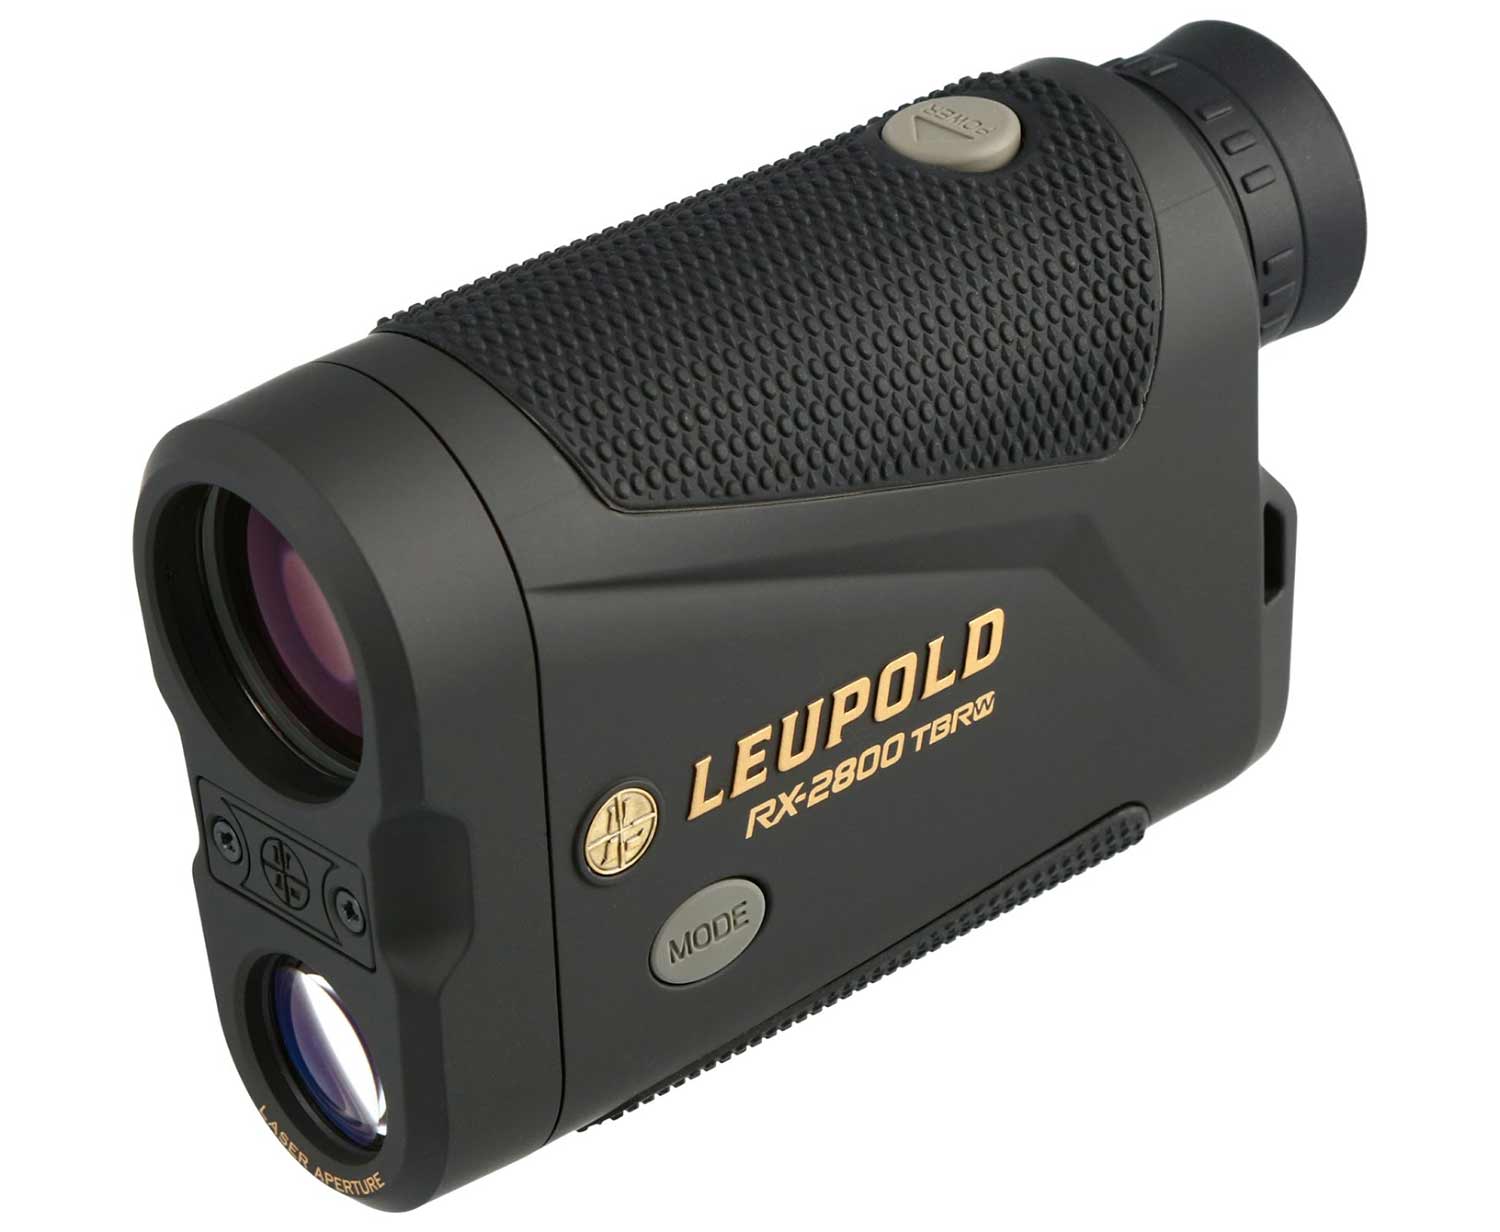 Leupold RX-2600 TBR rangefinders